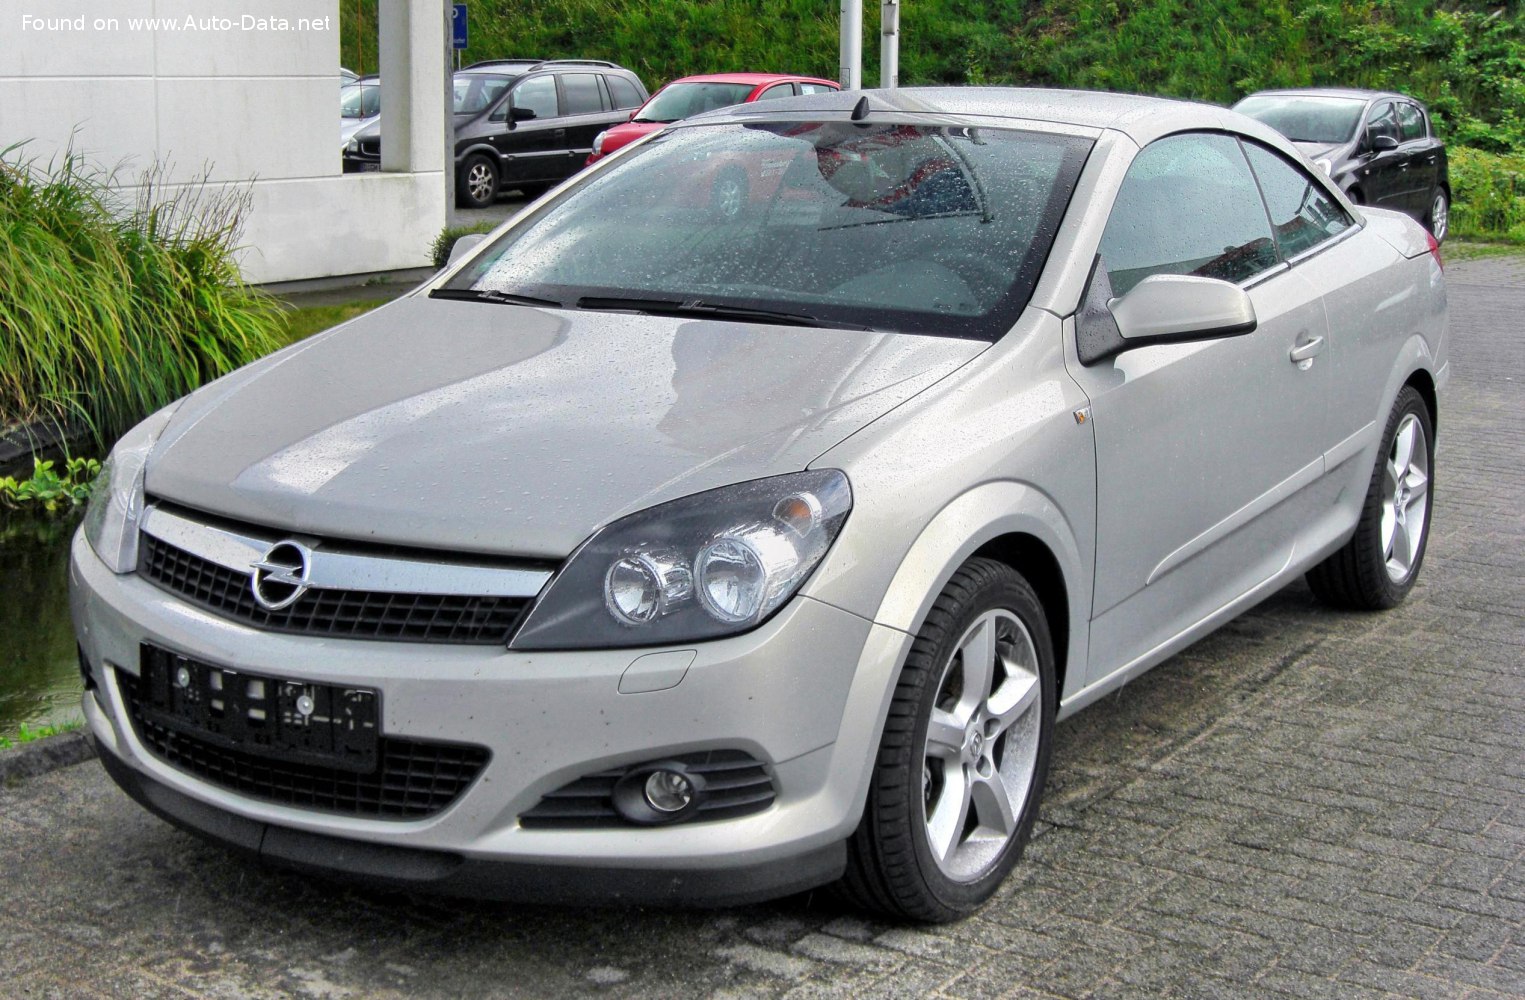 2006 Opel Astra H TwinTop 2.0i 16V Turbo ECOTEC (200 Hp)